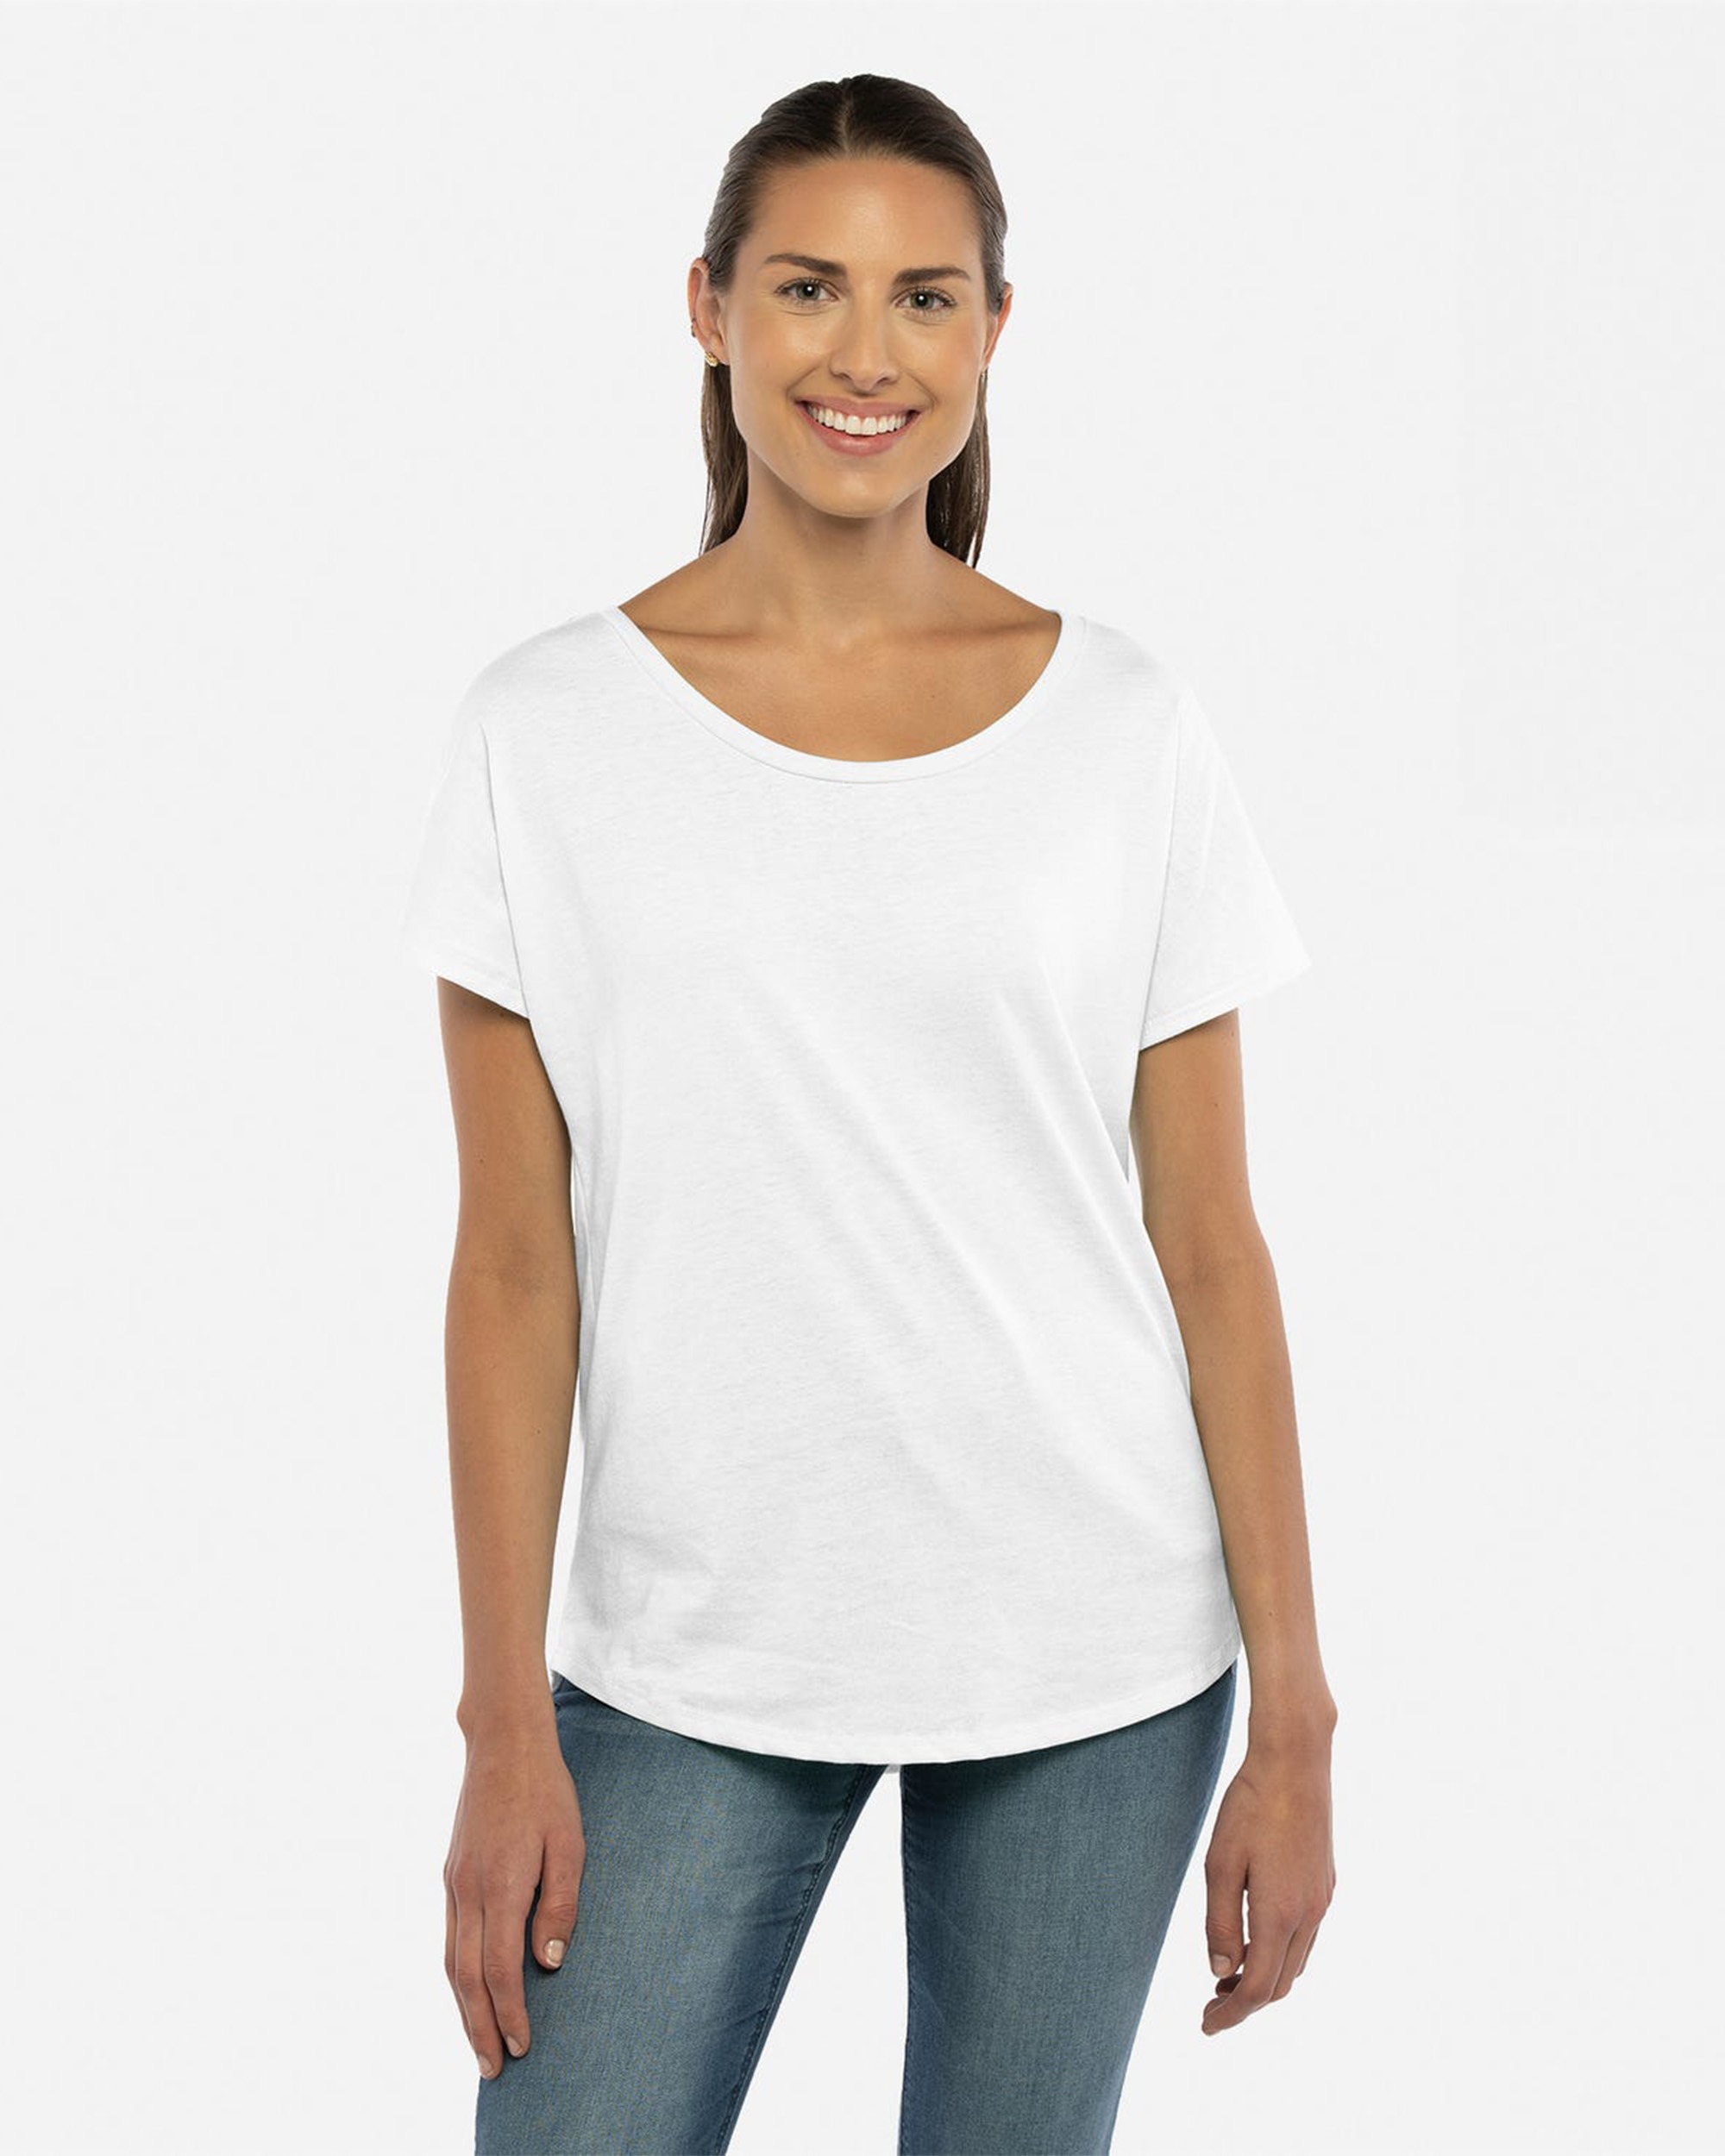 Next Level Apparel® 1560 Women's Ideal Dolman T-Shirt